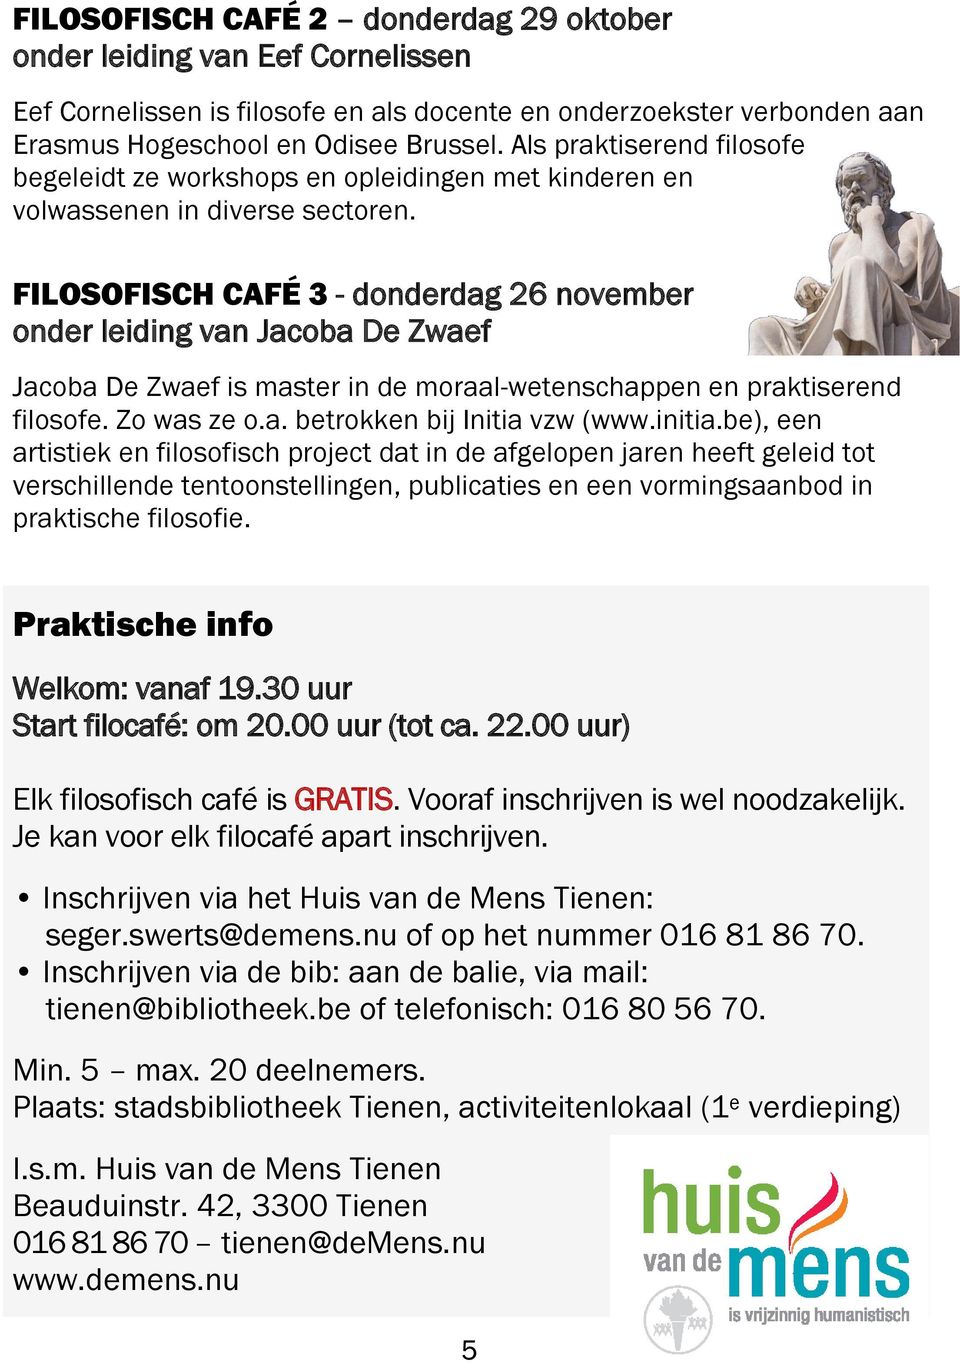 FILOSOFISCH CAFÉ 3 - donderdag 26 november onder leiding van Jacoba De Zwaef Jacoba De Zwaef is master in de moraal-wetenschappen en praktiserend filosofe. Zo was ze o.a. betrokken bij Initia vzw (www.